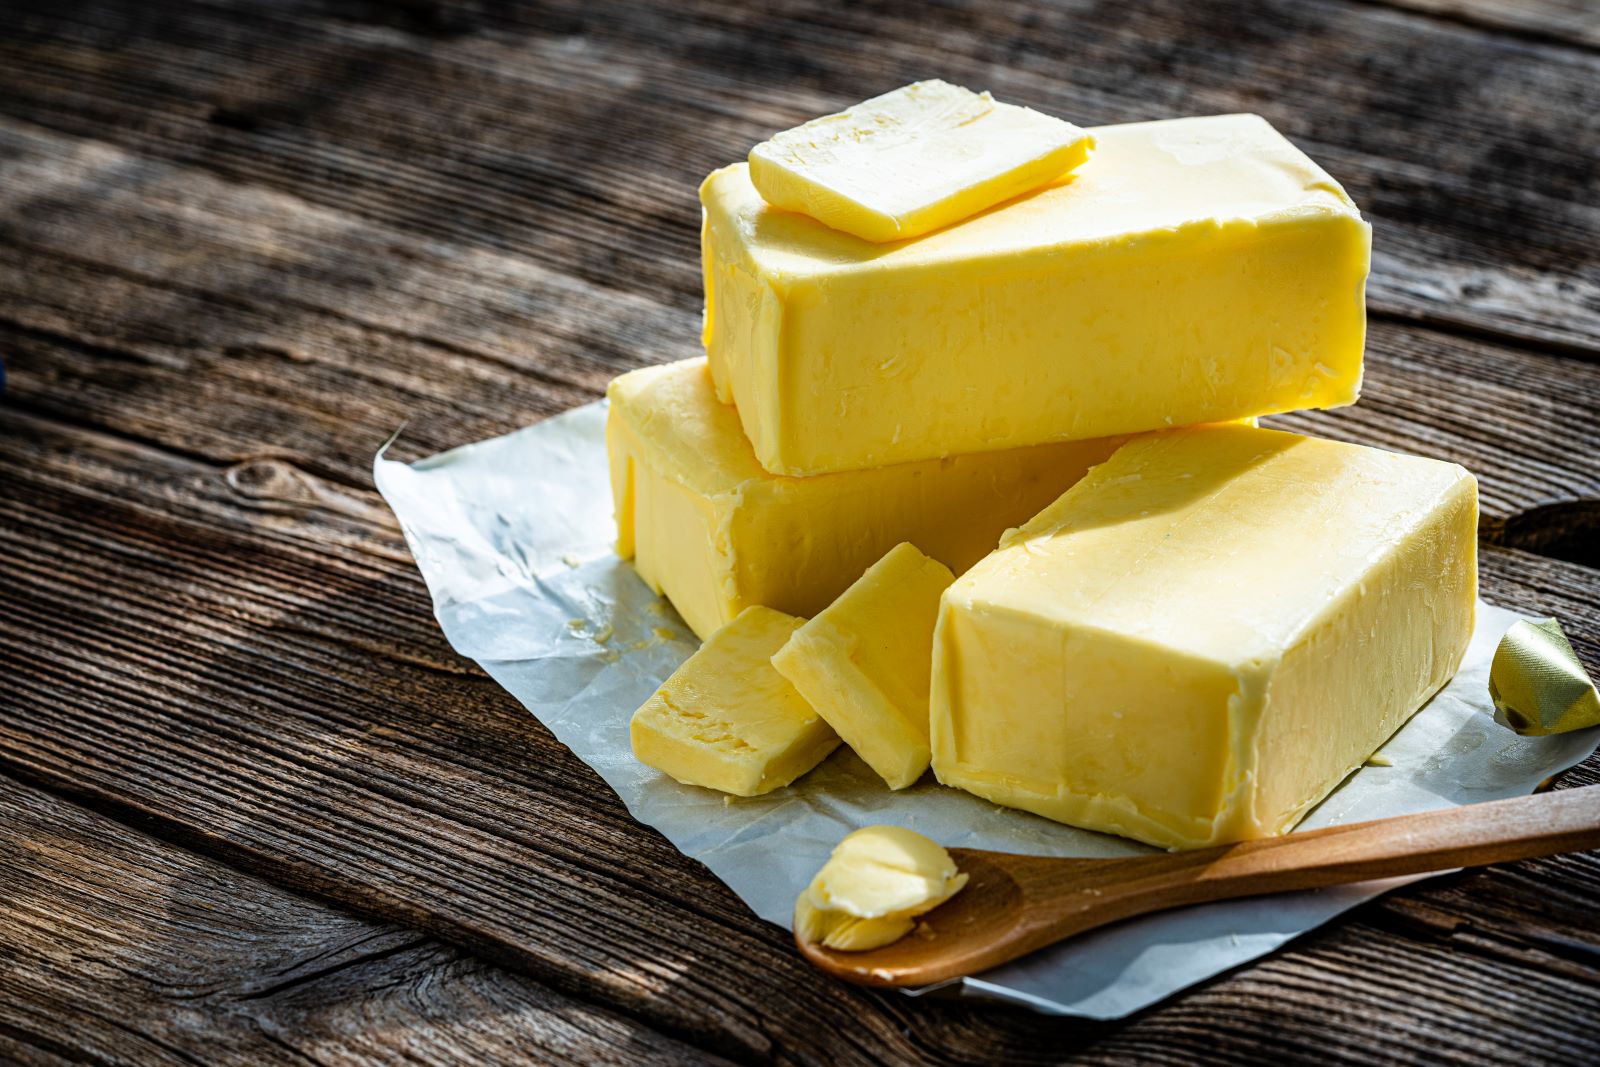 Nutrition Smack Down: Butter vs. Margarine